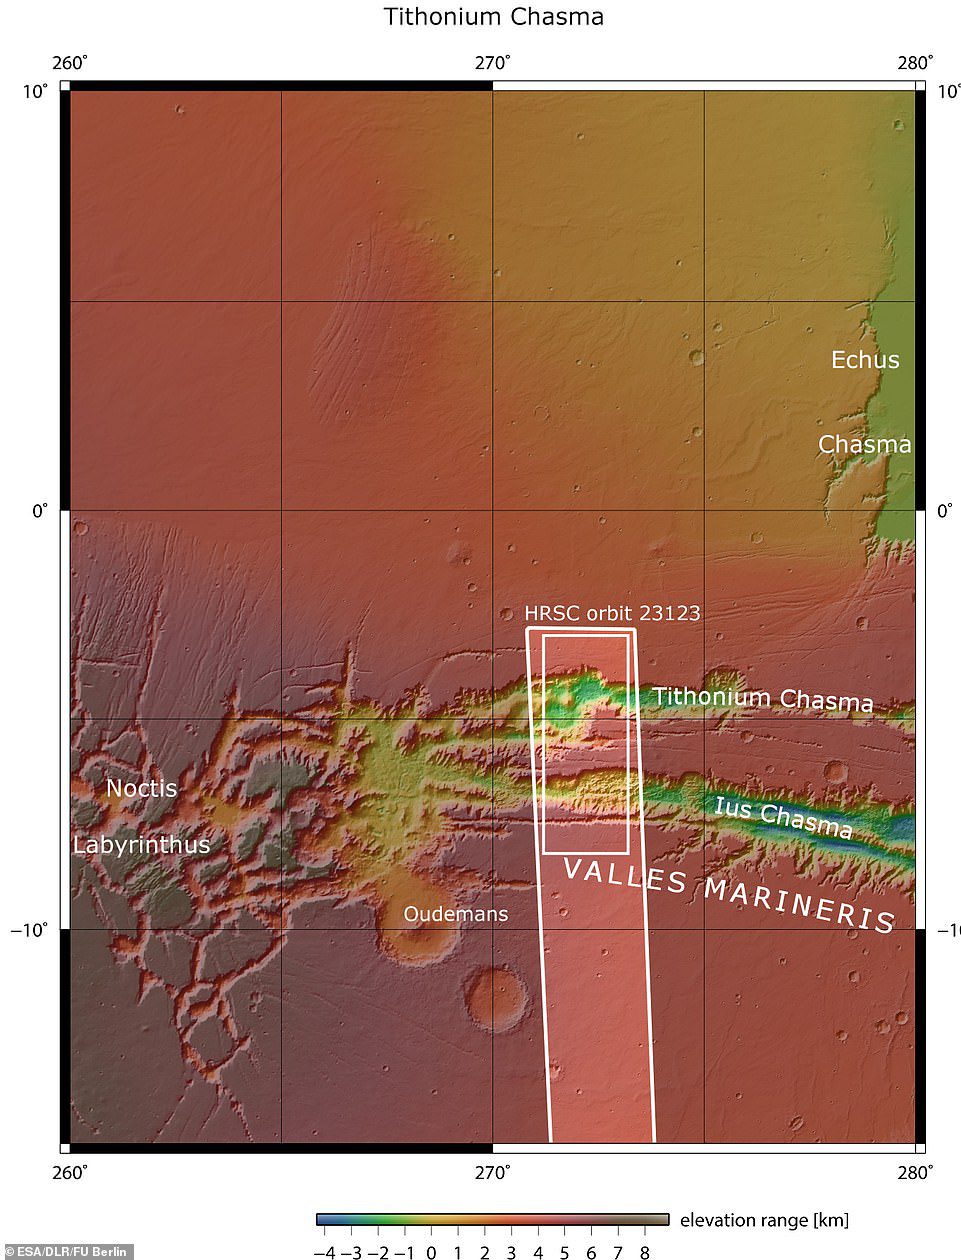 Lus e Tithonium Chasmata sono visti sopra.  L'area delineata nel riquadro bianco scuro indica l'area ripresa dalla telecamera stereo ad alta risoluzione Mars Express il 21 aprile 2022 durante l'orbita.